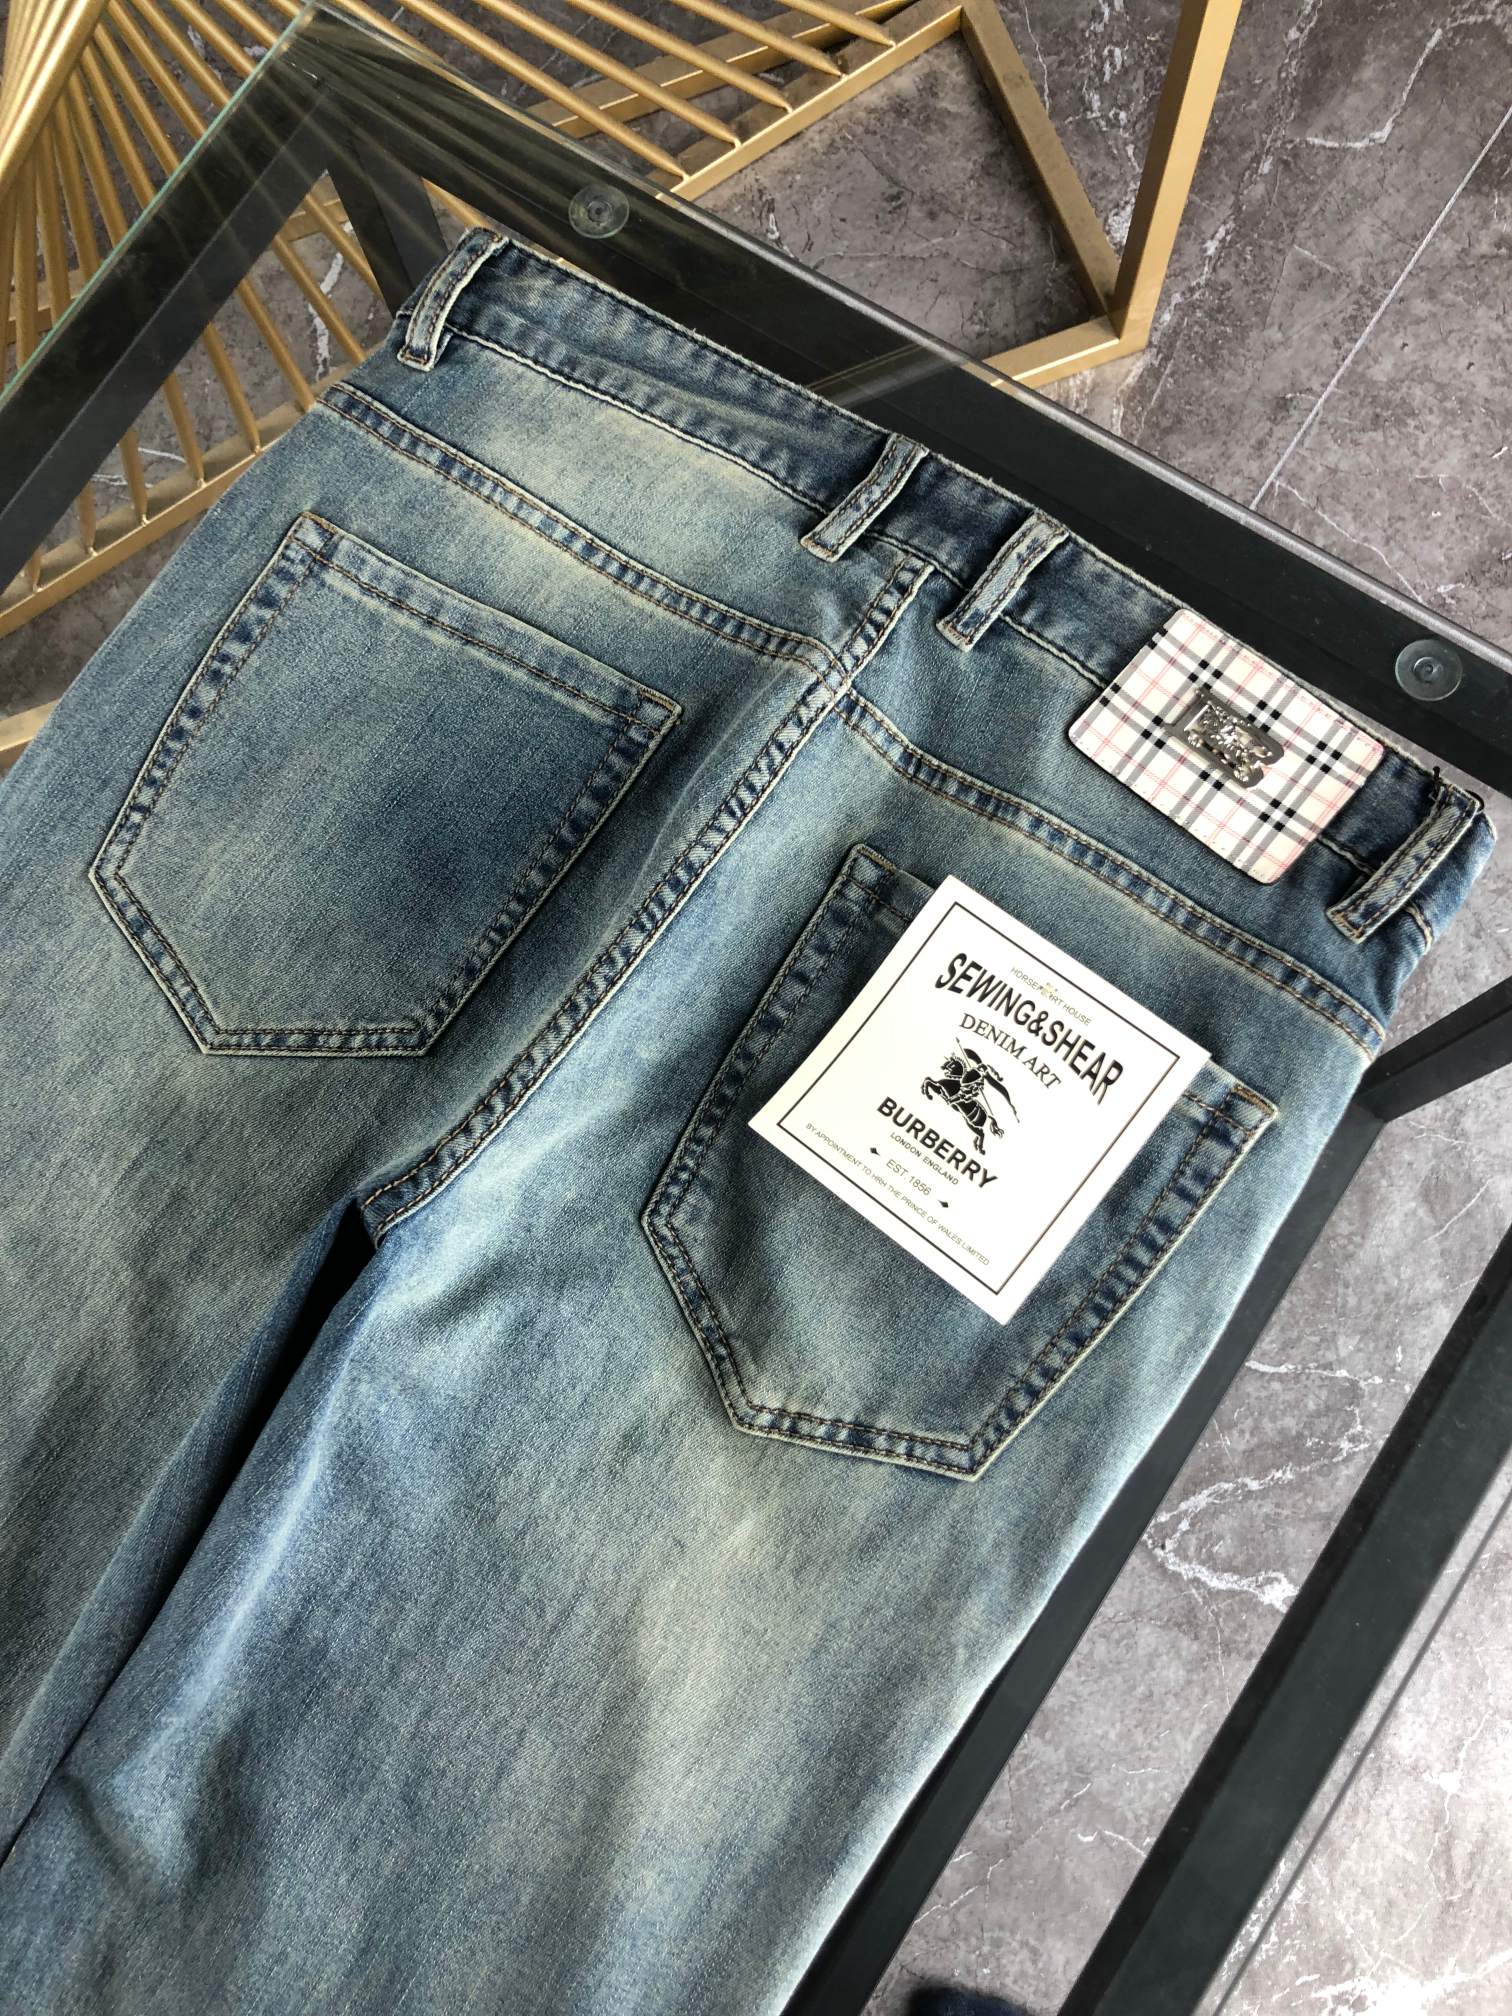 巴宝莉春夏新品专柜有售实体店极品牛仔裤专柜原版1:1好货适合各个年龄段市场最高版本的欧洲进口面料舒适柔软